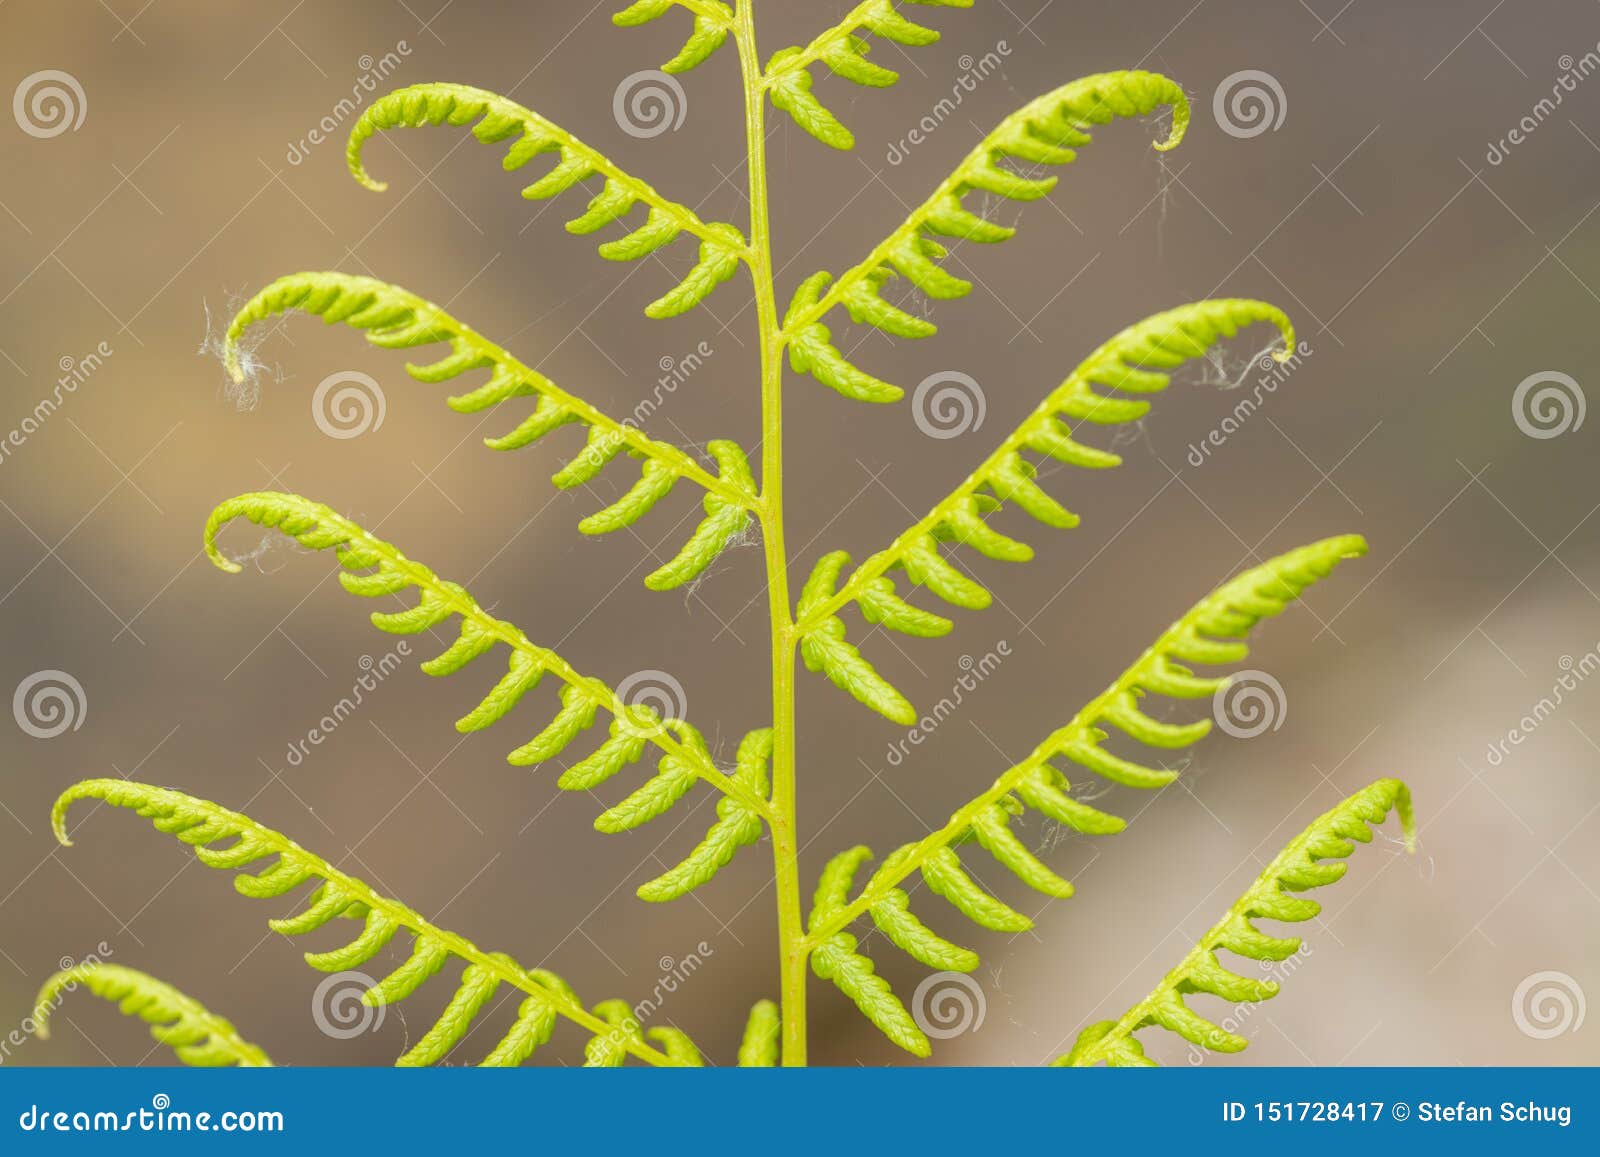 new fern leaf - unfolding